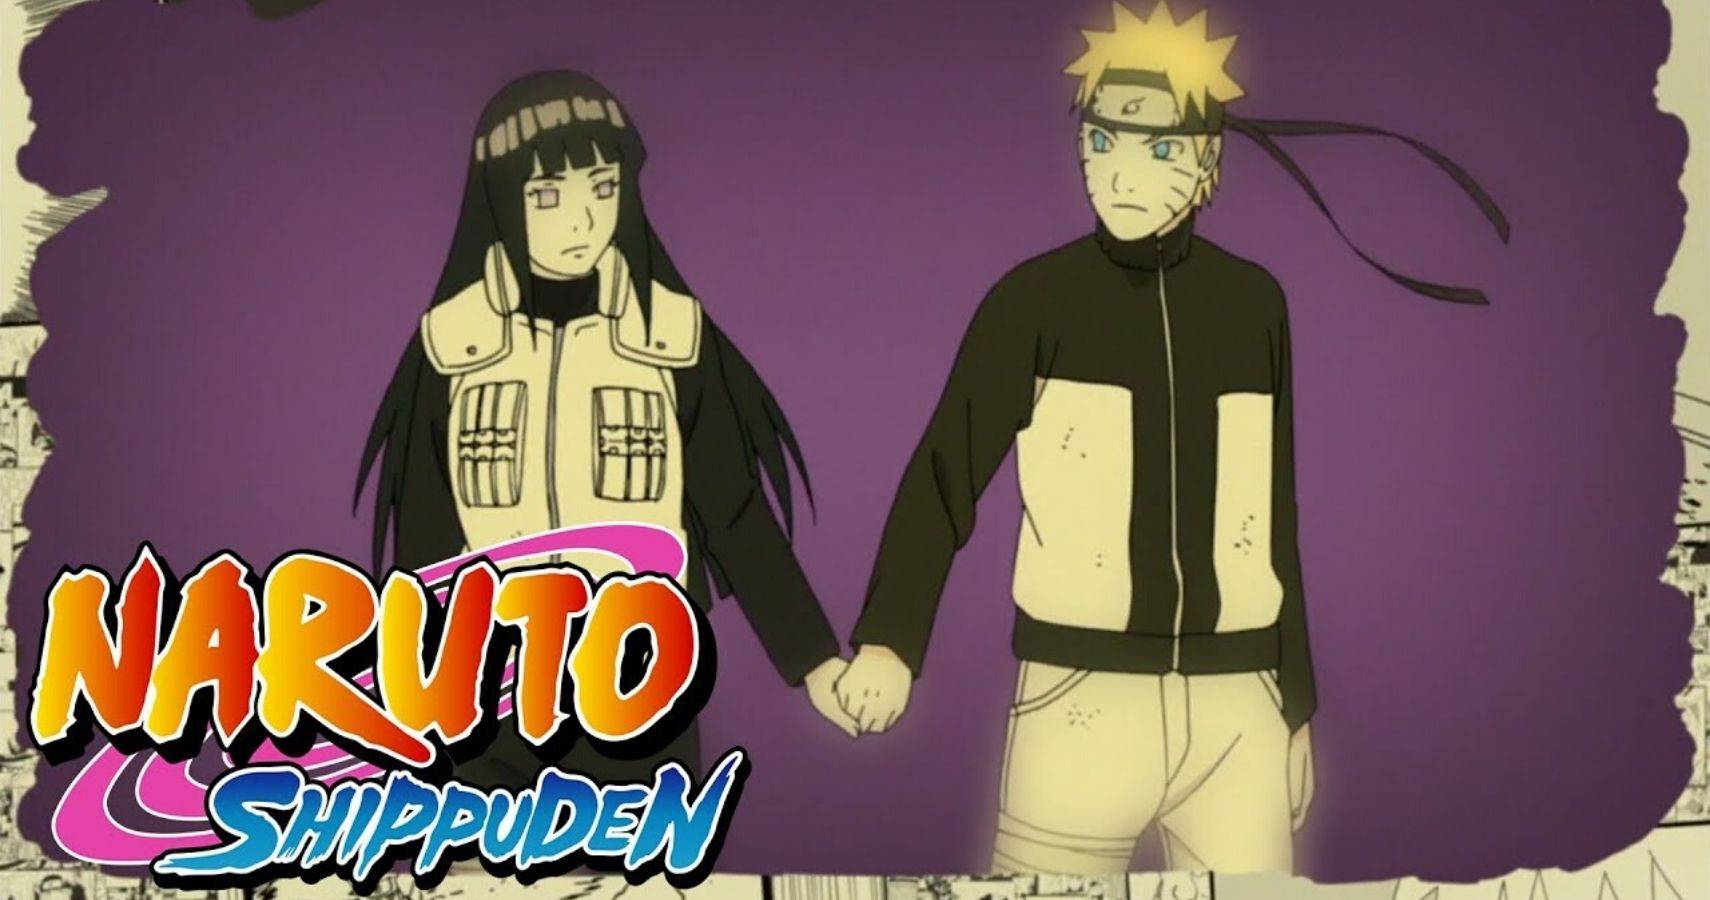 Naruto shippuden capitulo 40 sub español